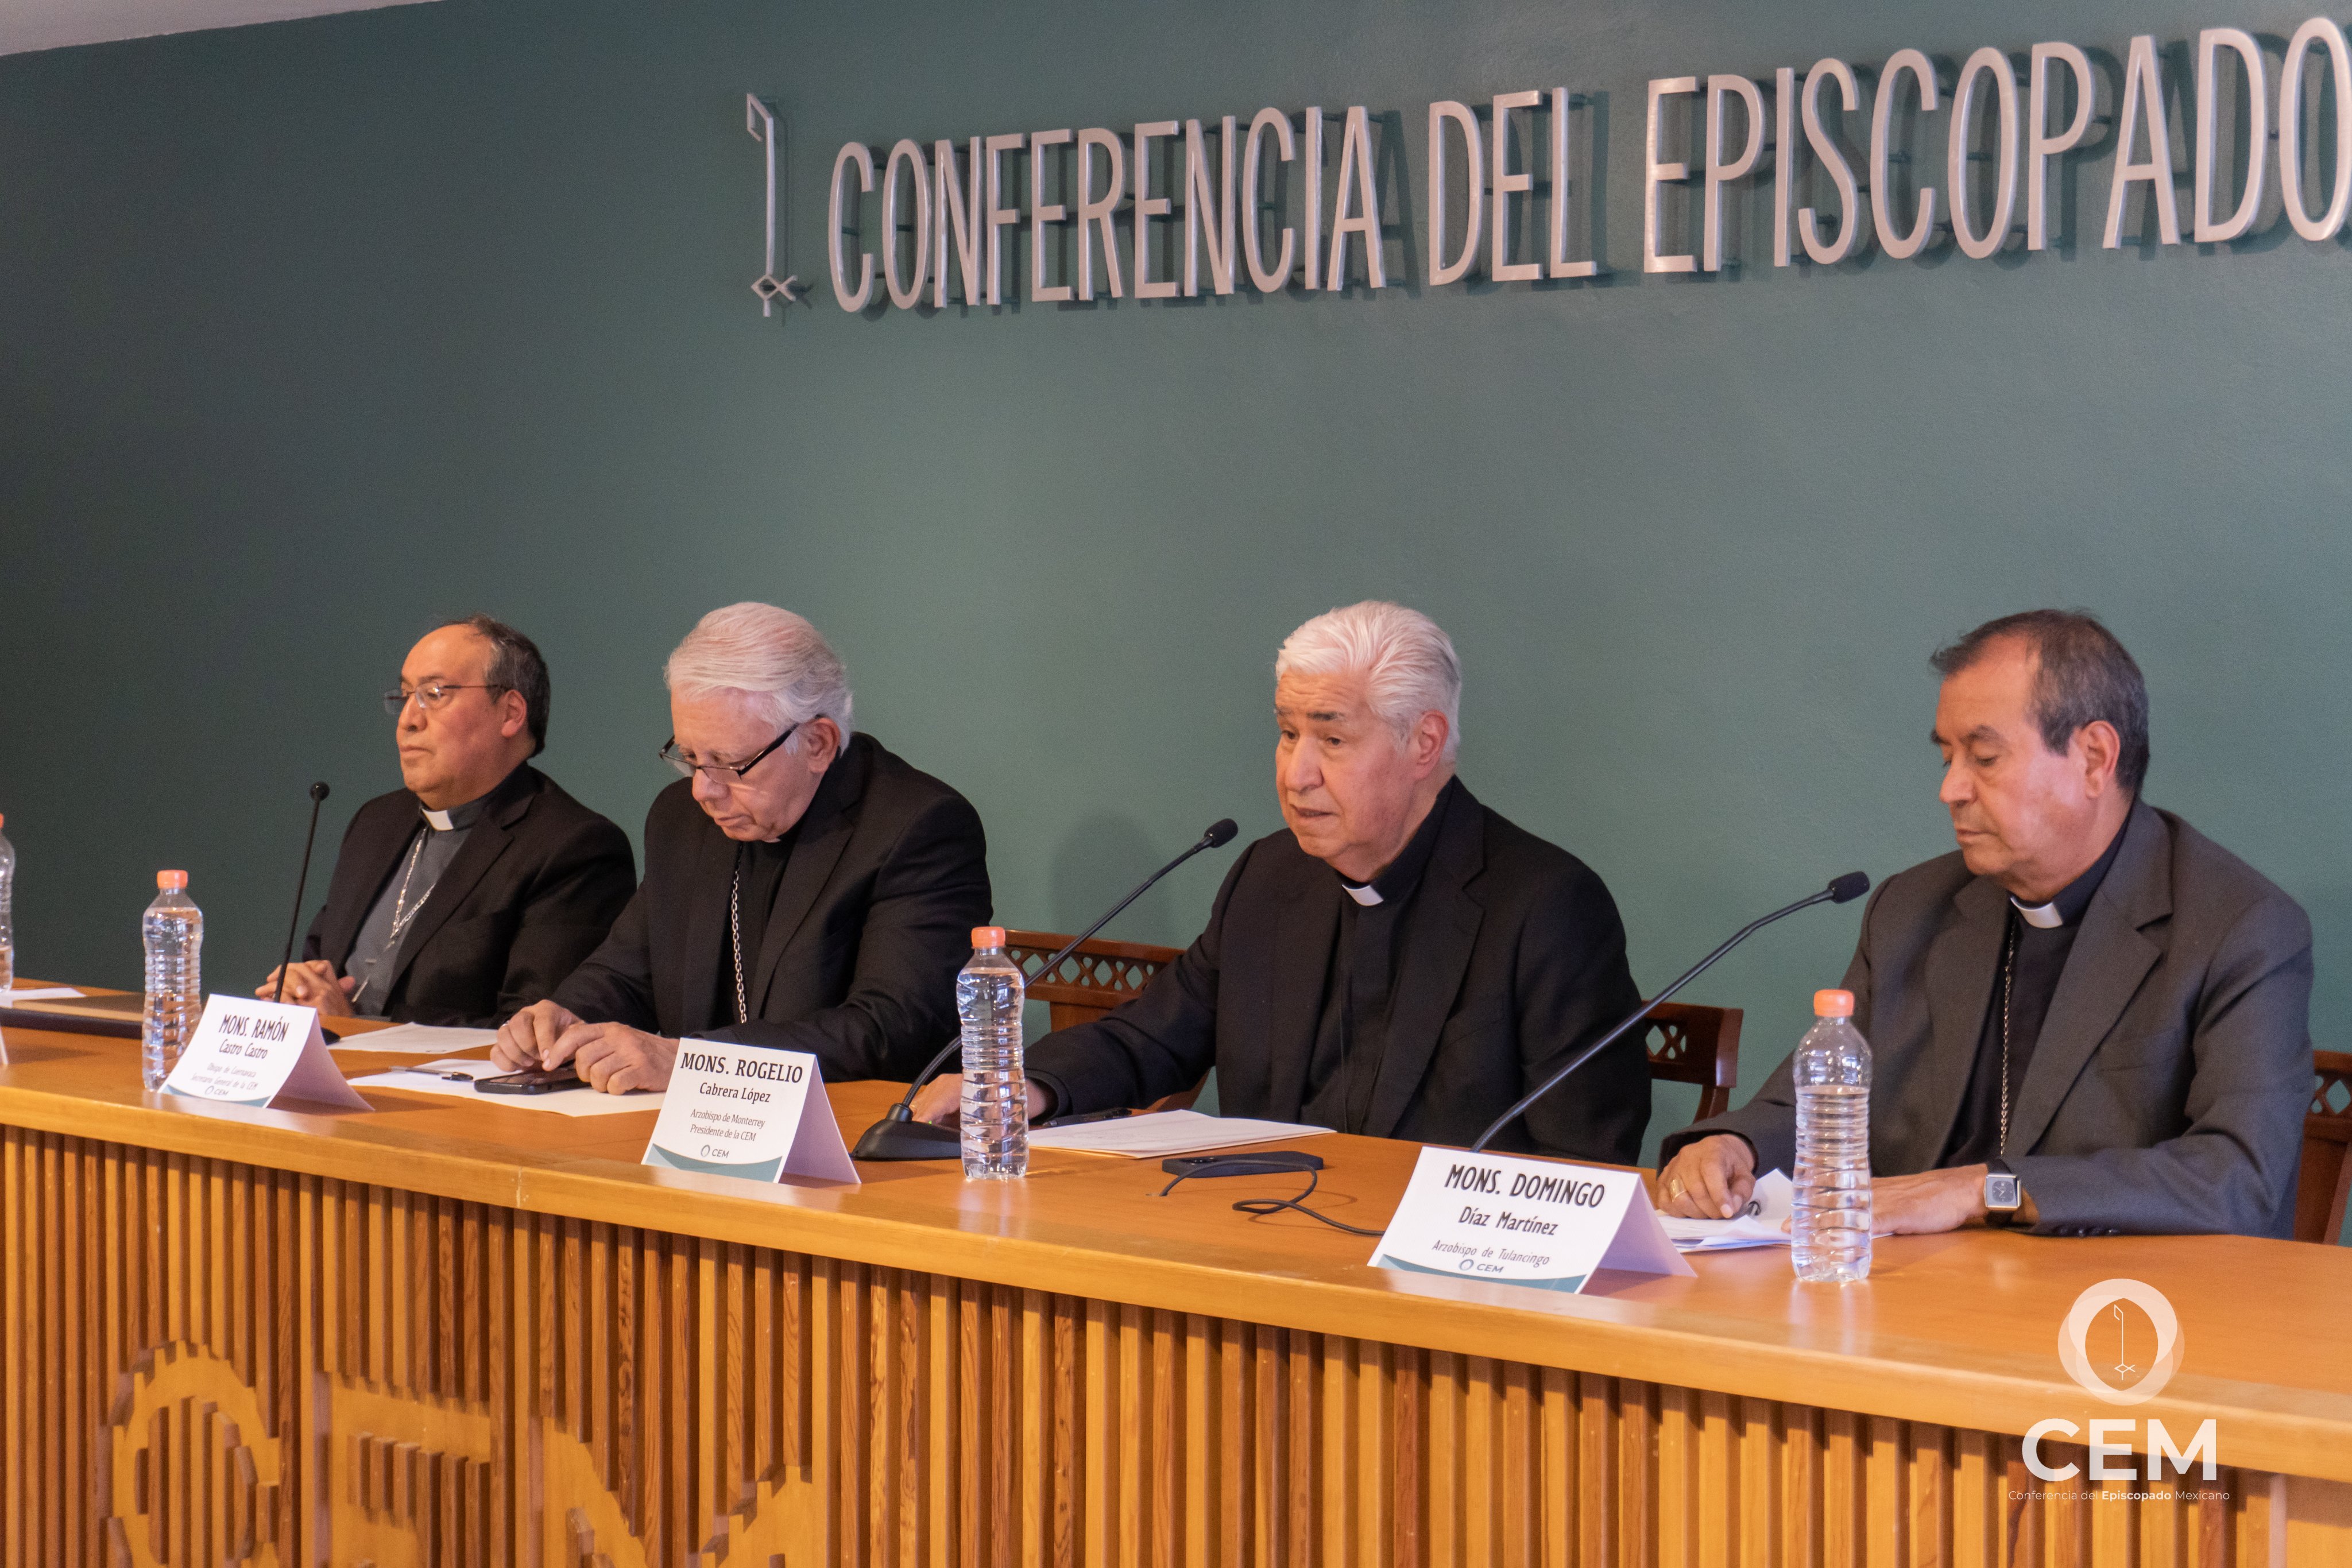 Obispos mexicanos